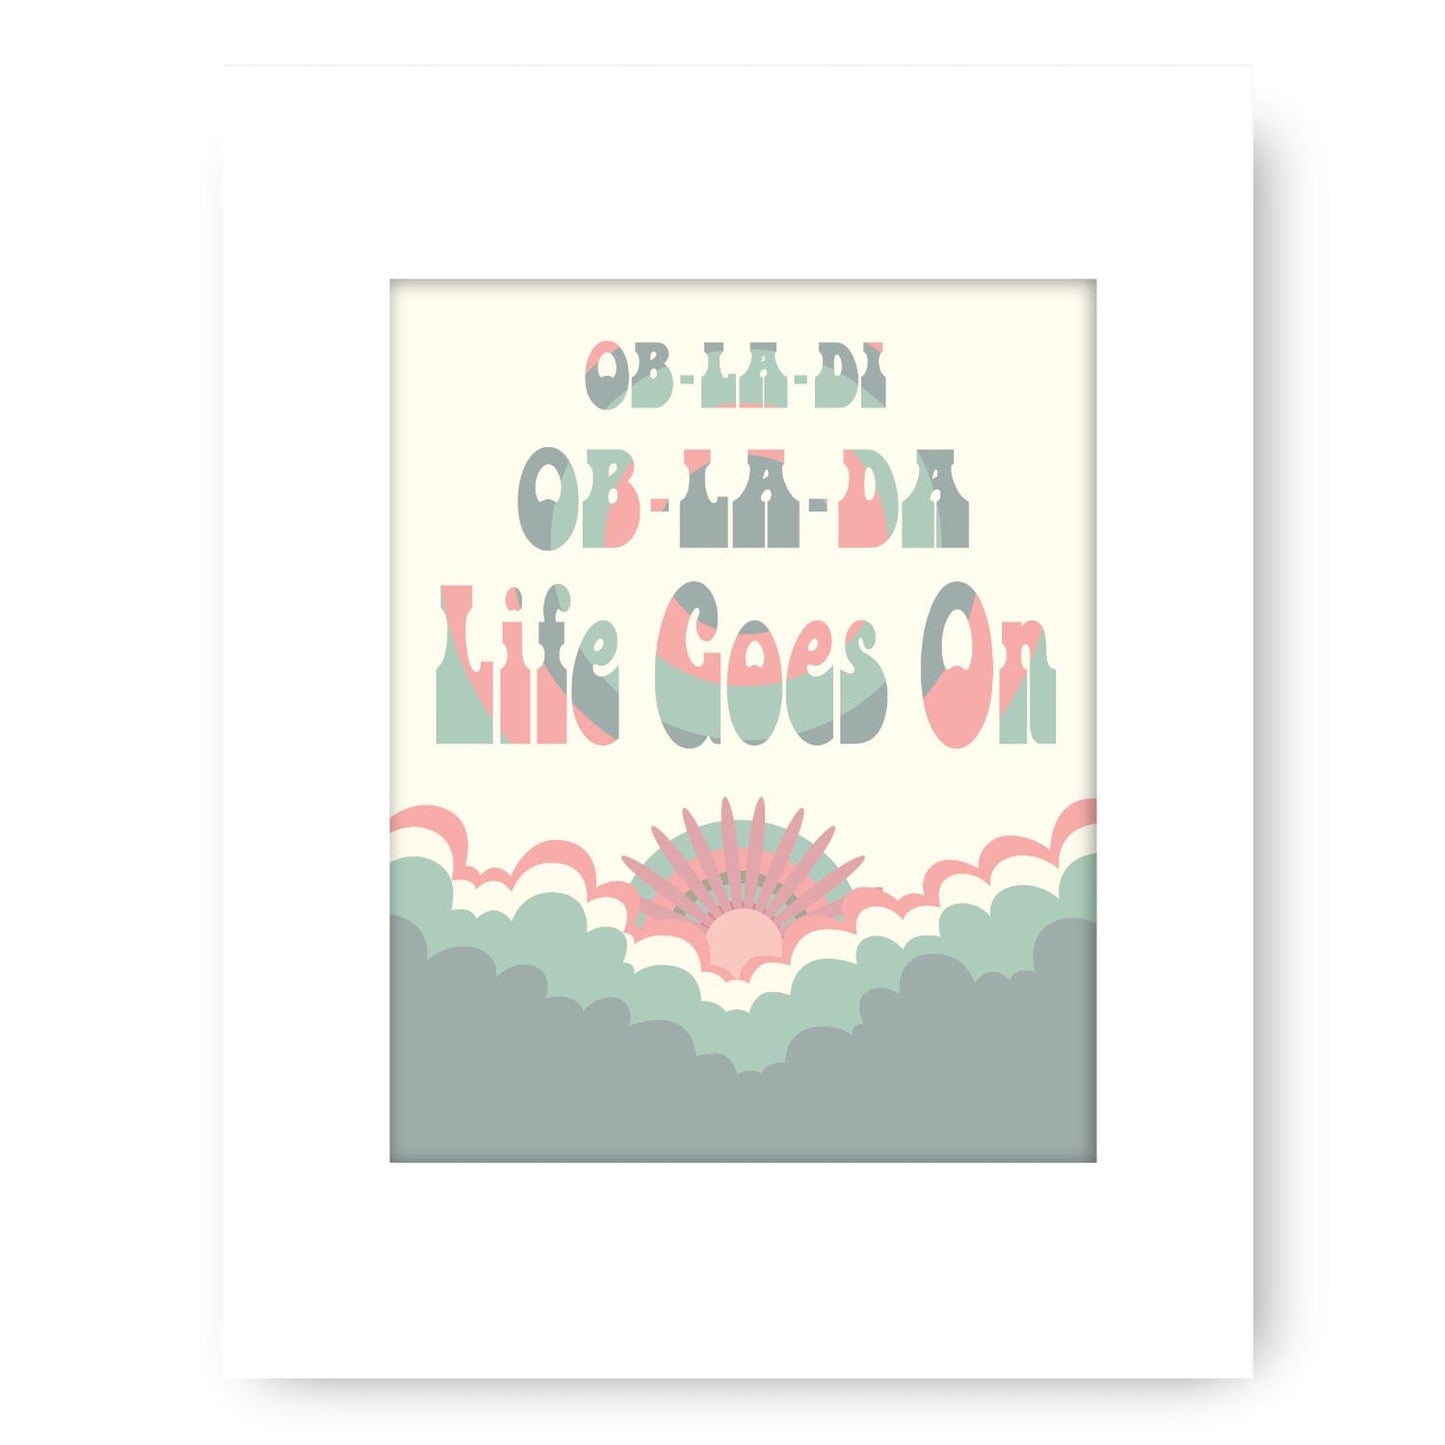 Ob-La-Di Ob-La-Da by the Beatles - Song Lyrics Music Print Song Lyrics Art Song Lyrics Art 8x10 White Matted Print 